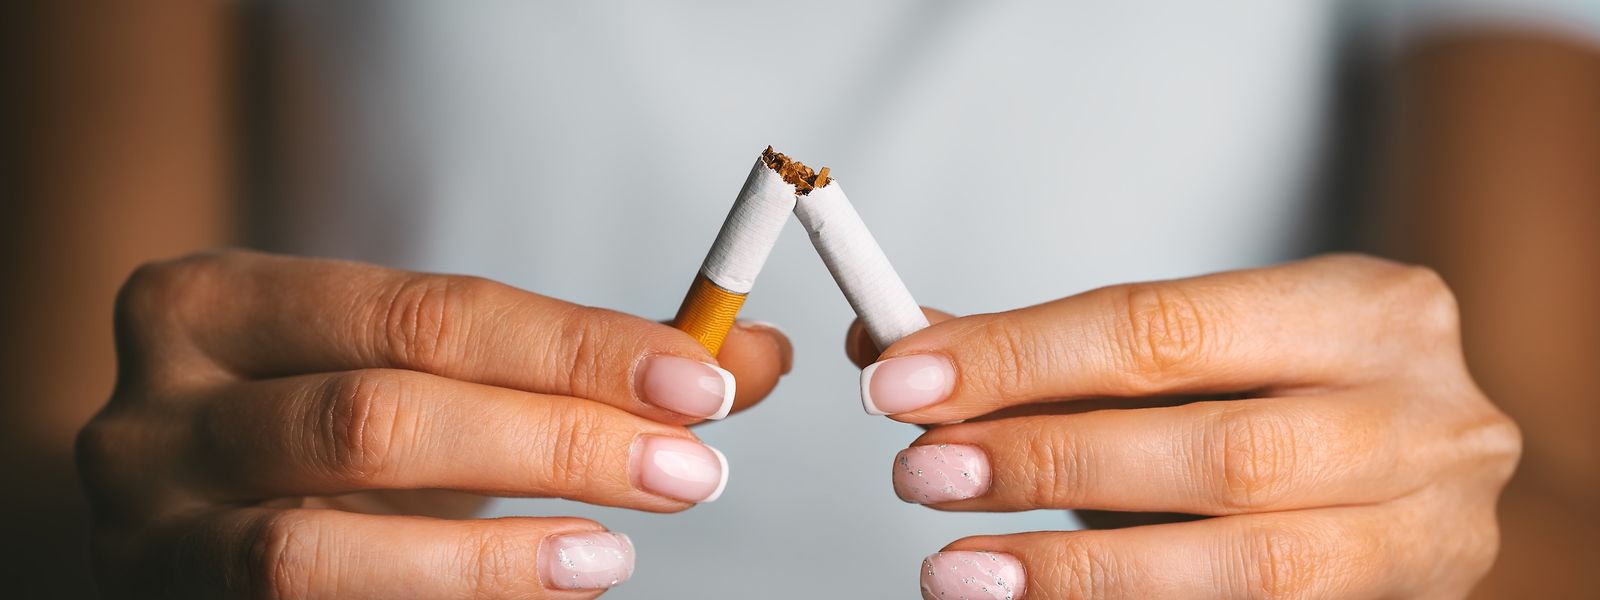 Selon l'étude annuelle de TNS Ilres réalisée pour le compte de la Fondation Cancer, 56% des fumeurs luxembourgeois souhaitent arrêter la cigarette. 